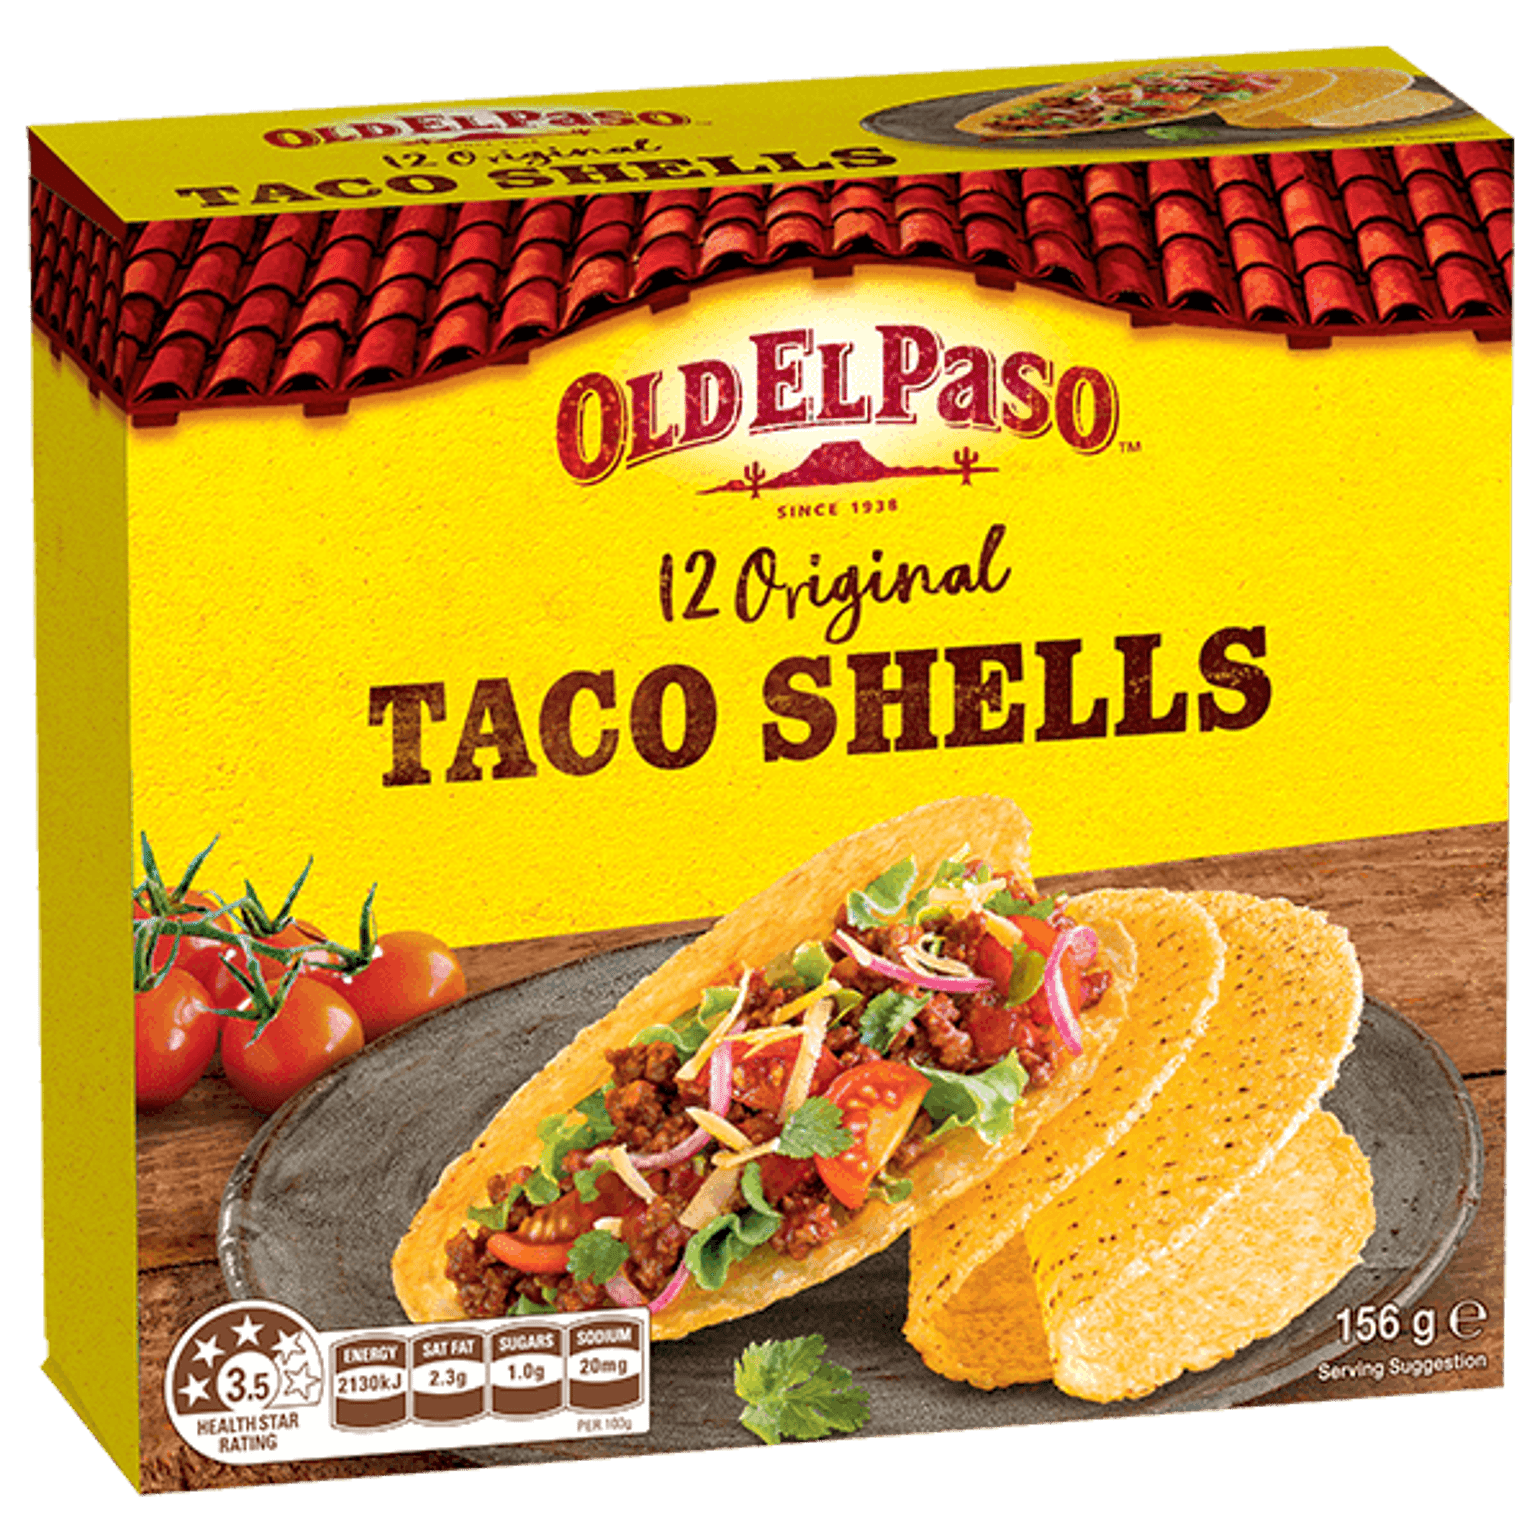 a pack of Old El Paso's 12 original taco shells (156g)